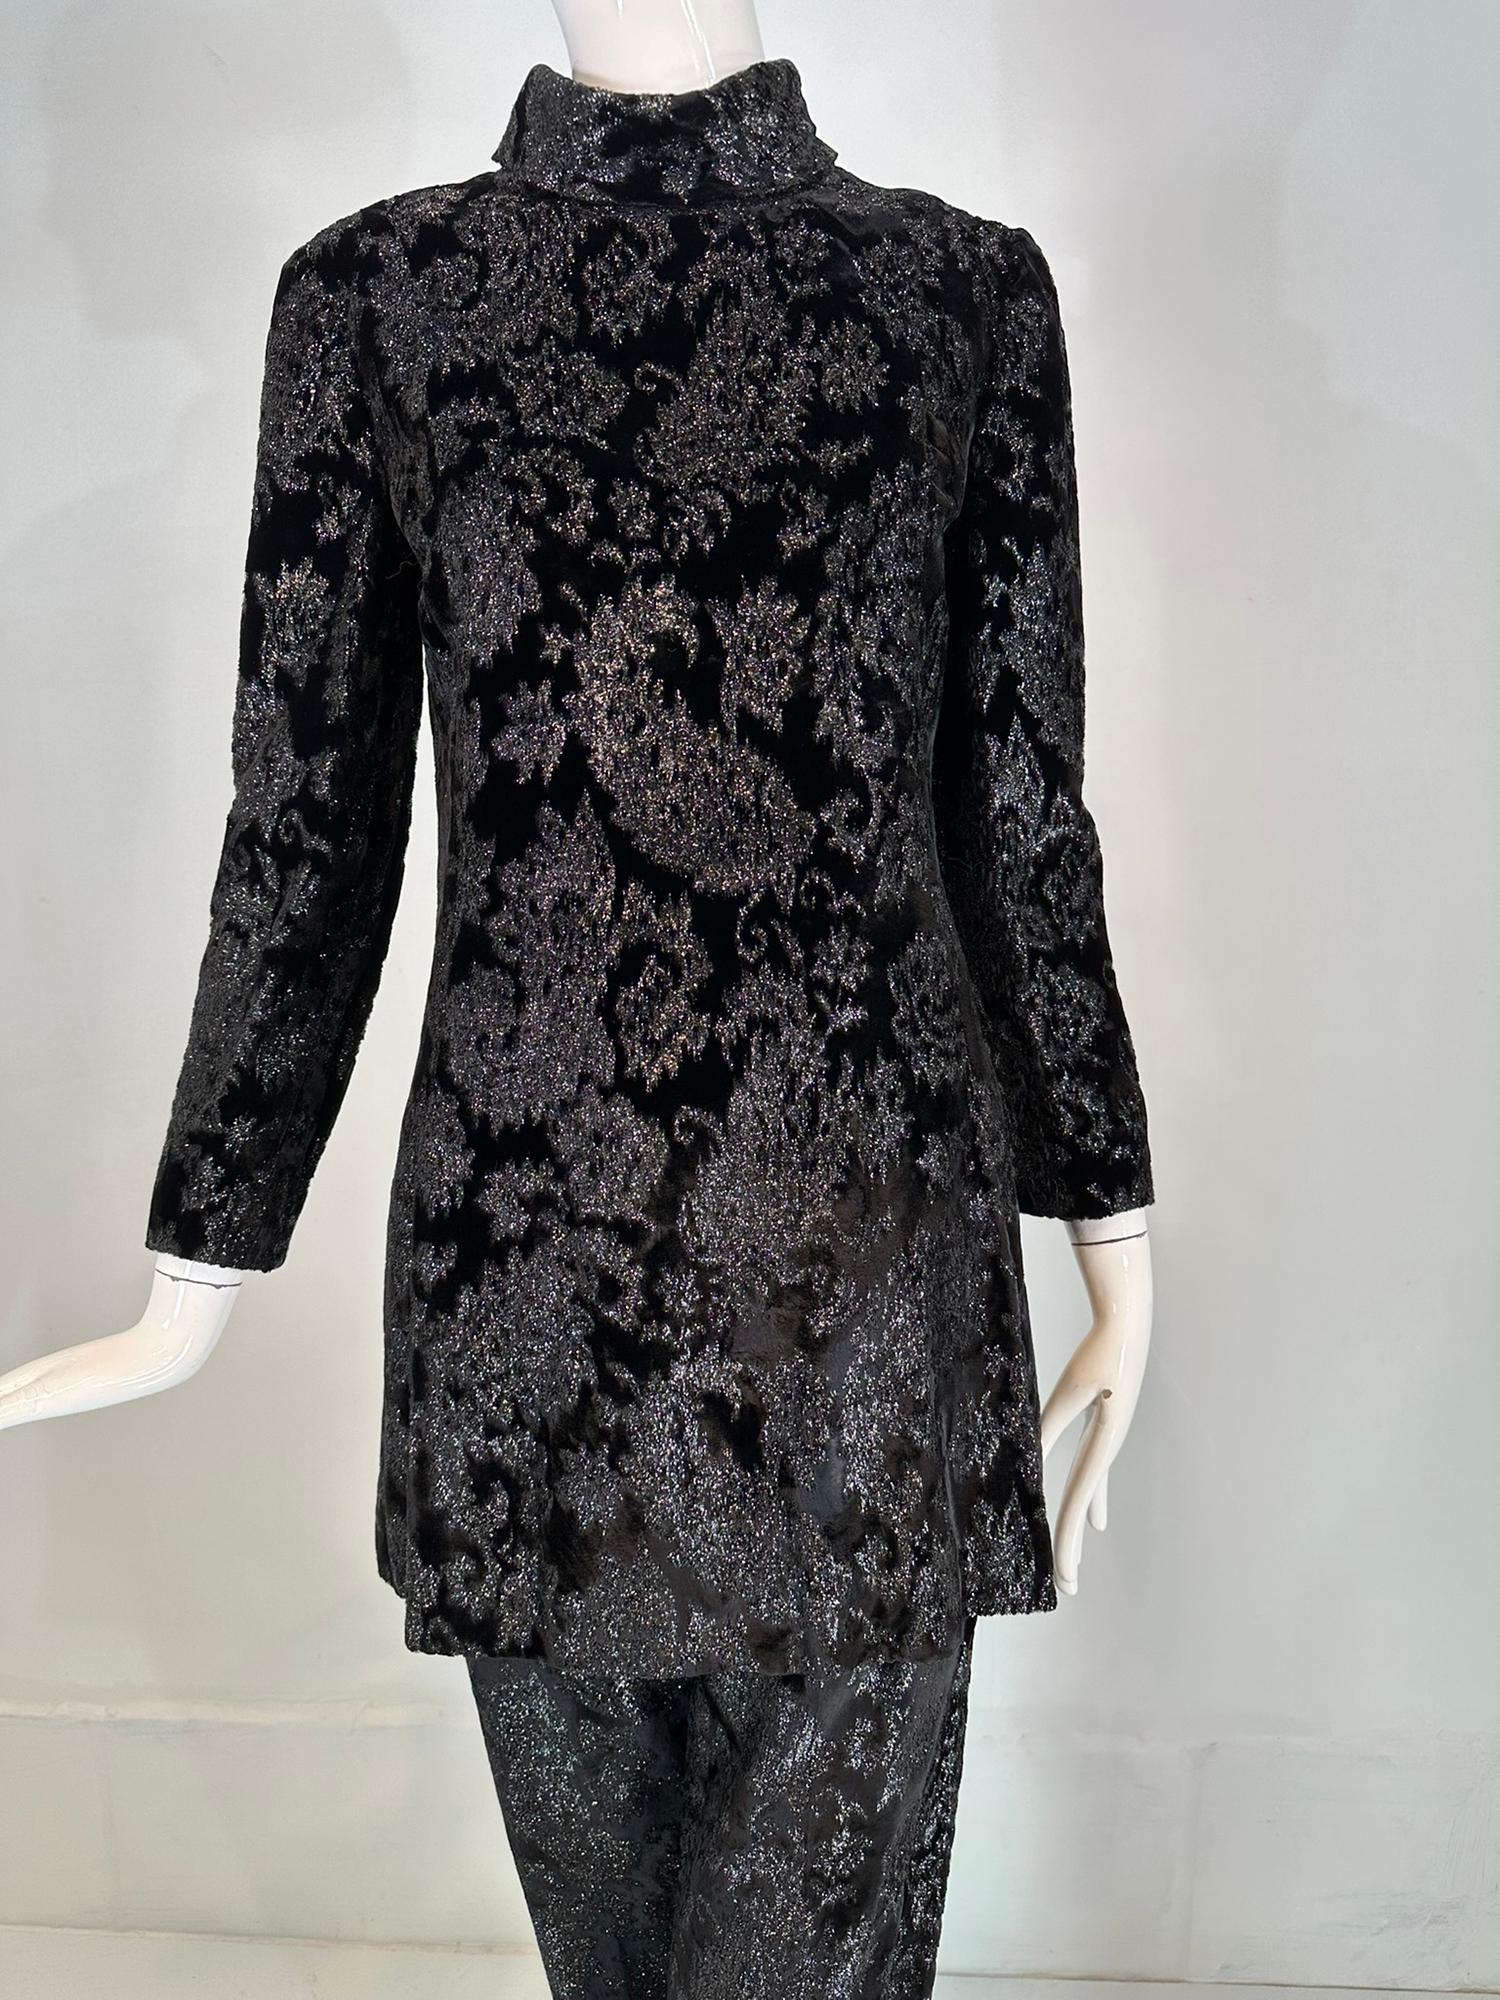 Givenchy schwarz Prinzessin Naht glitzernden Paisley Samt Tunika & Hose Set aus den 1970er Jahren. Glitzerndes Set aus schwarzem Samt mit Prinzessnähten, Tunika in A-Linien-Form mit Rollkragen und langen Ärmeln. Das Oberteil ist vollständig